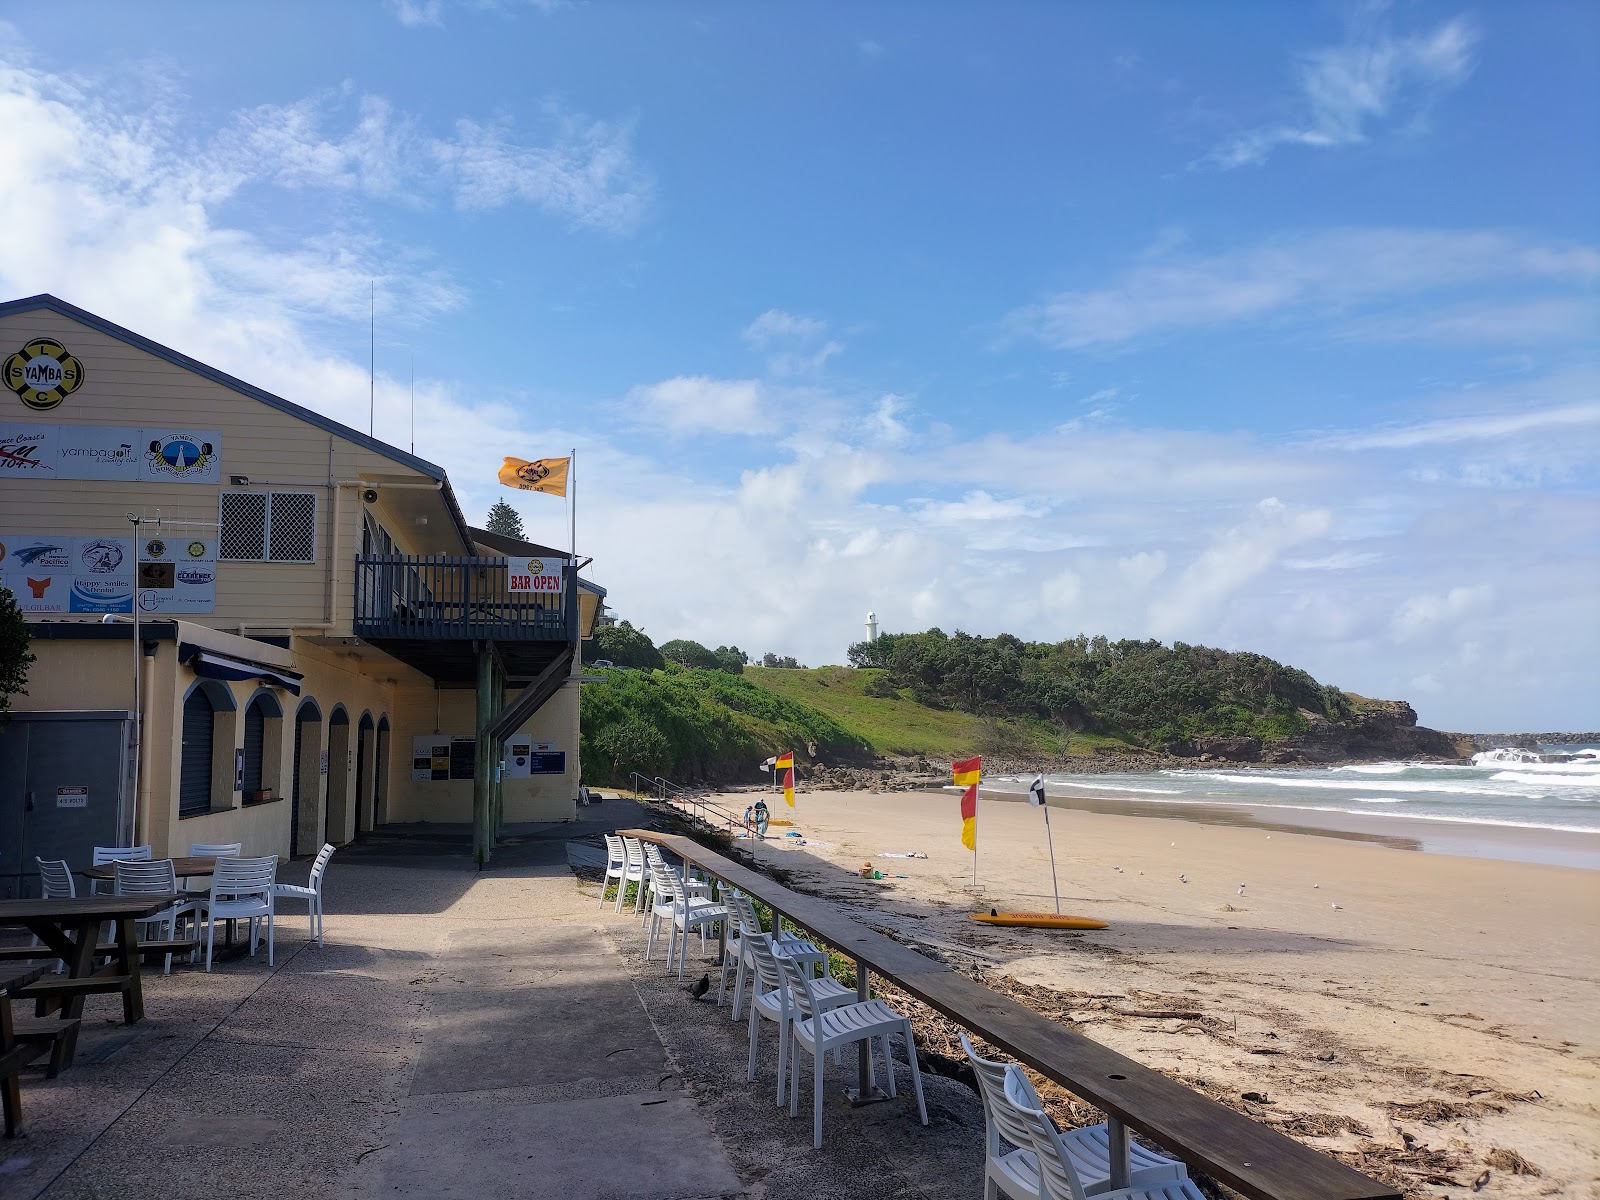 Photo de Yamba Beach - endroit populaire parmi les connaisseurs de la détente